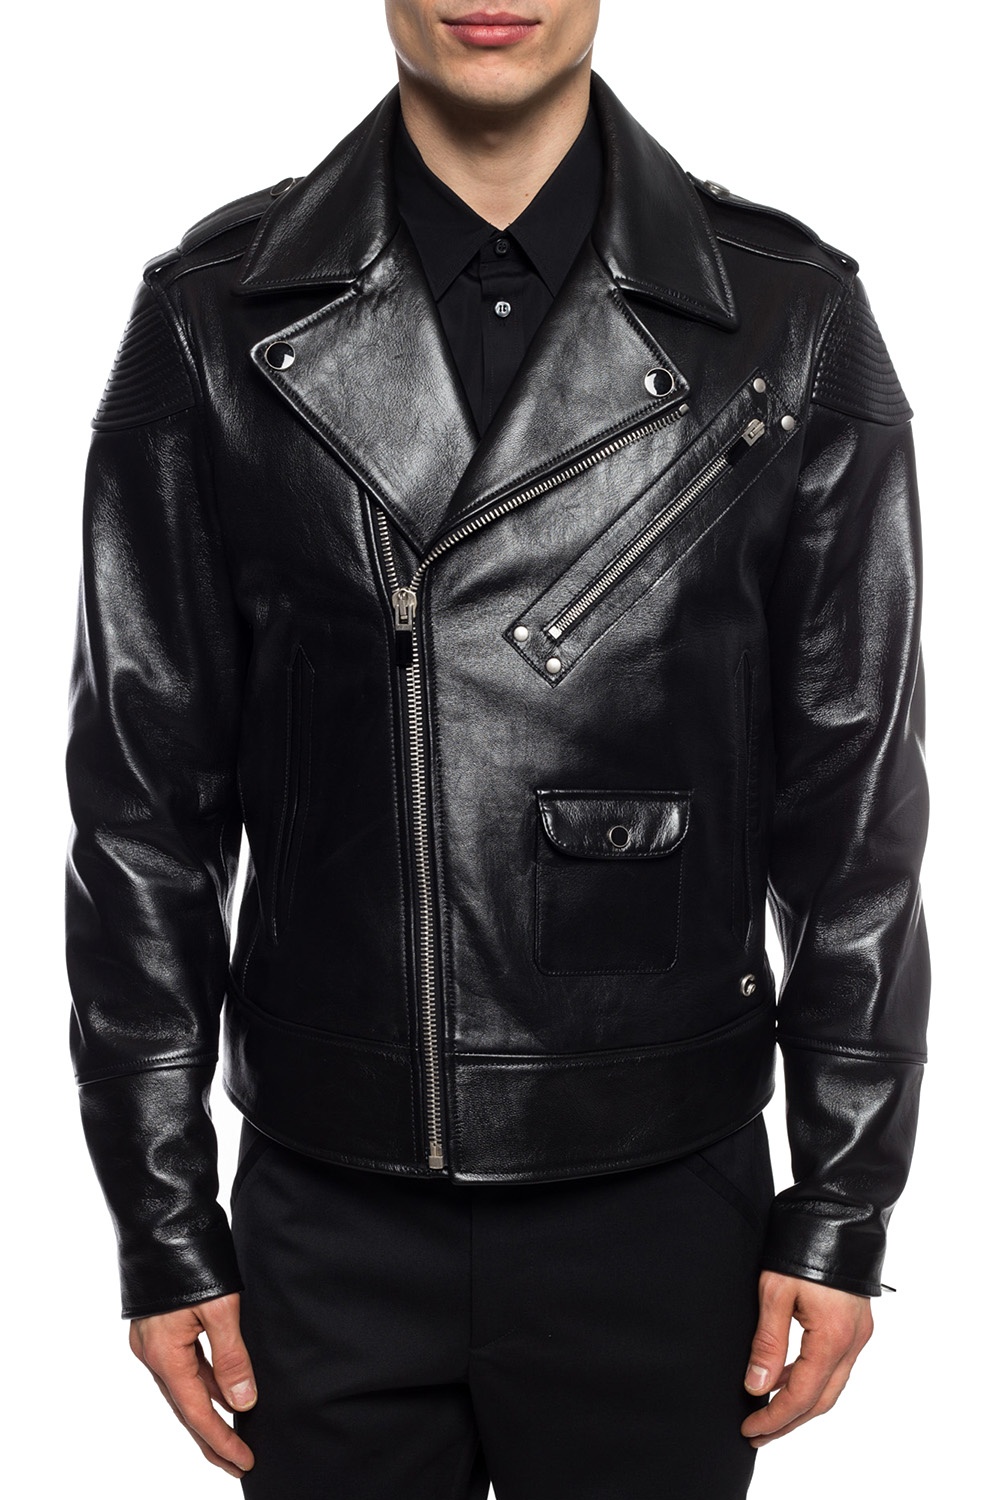 Just Cavalli Biker jacket | Men's Clothing | IetpShops